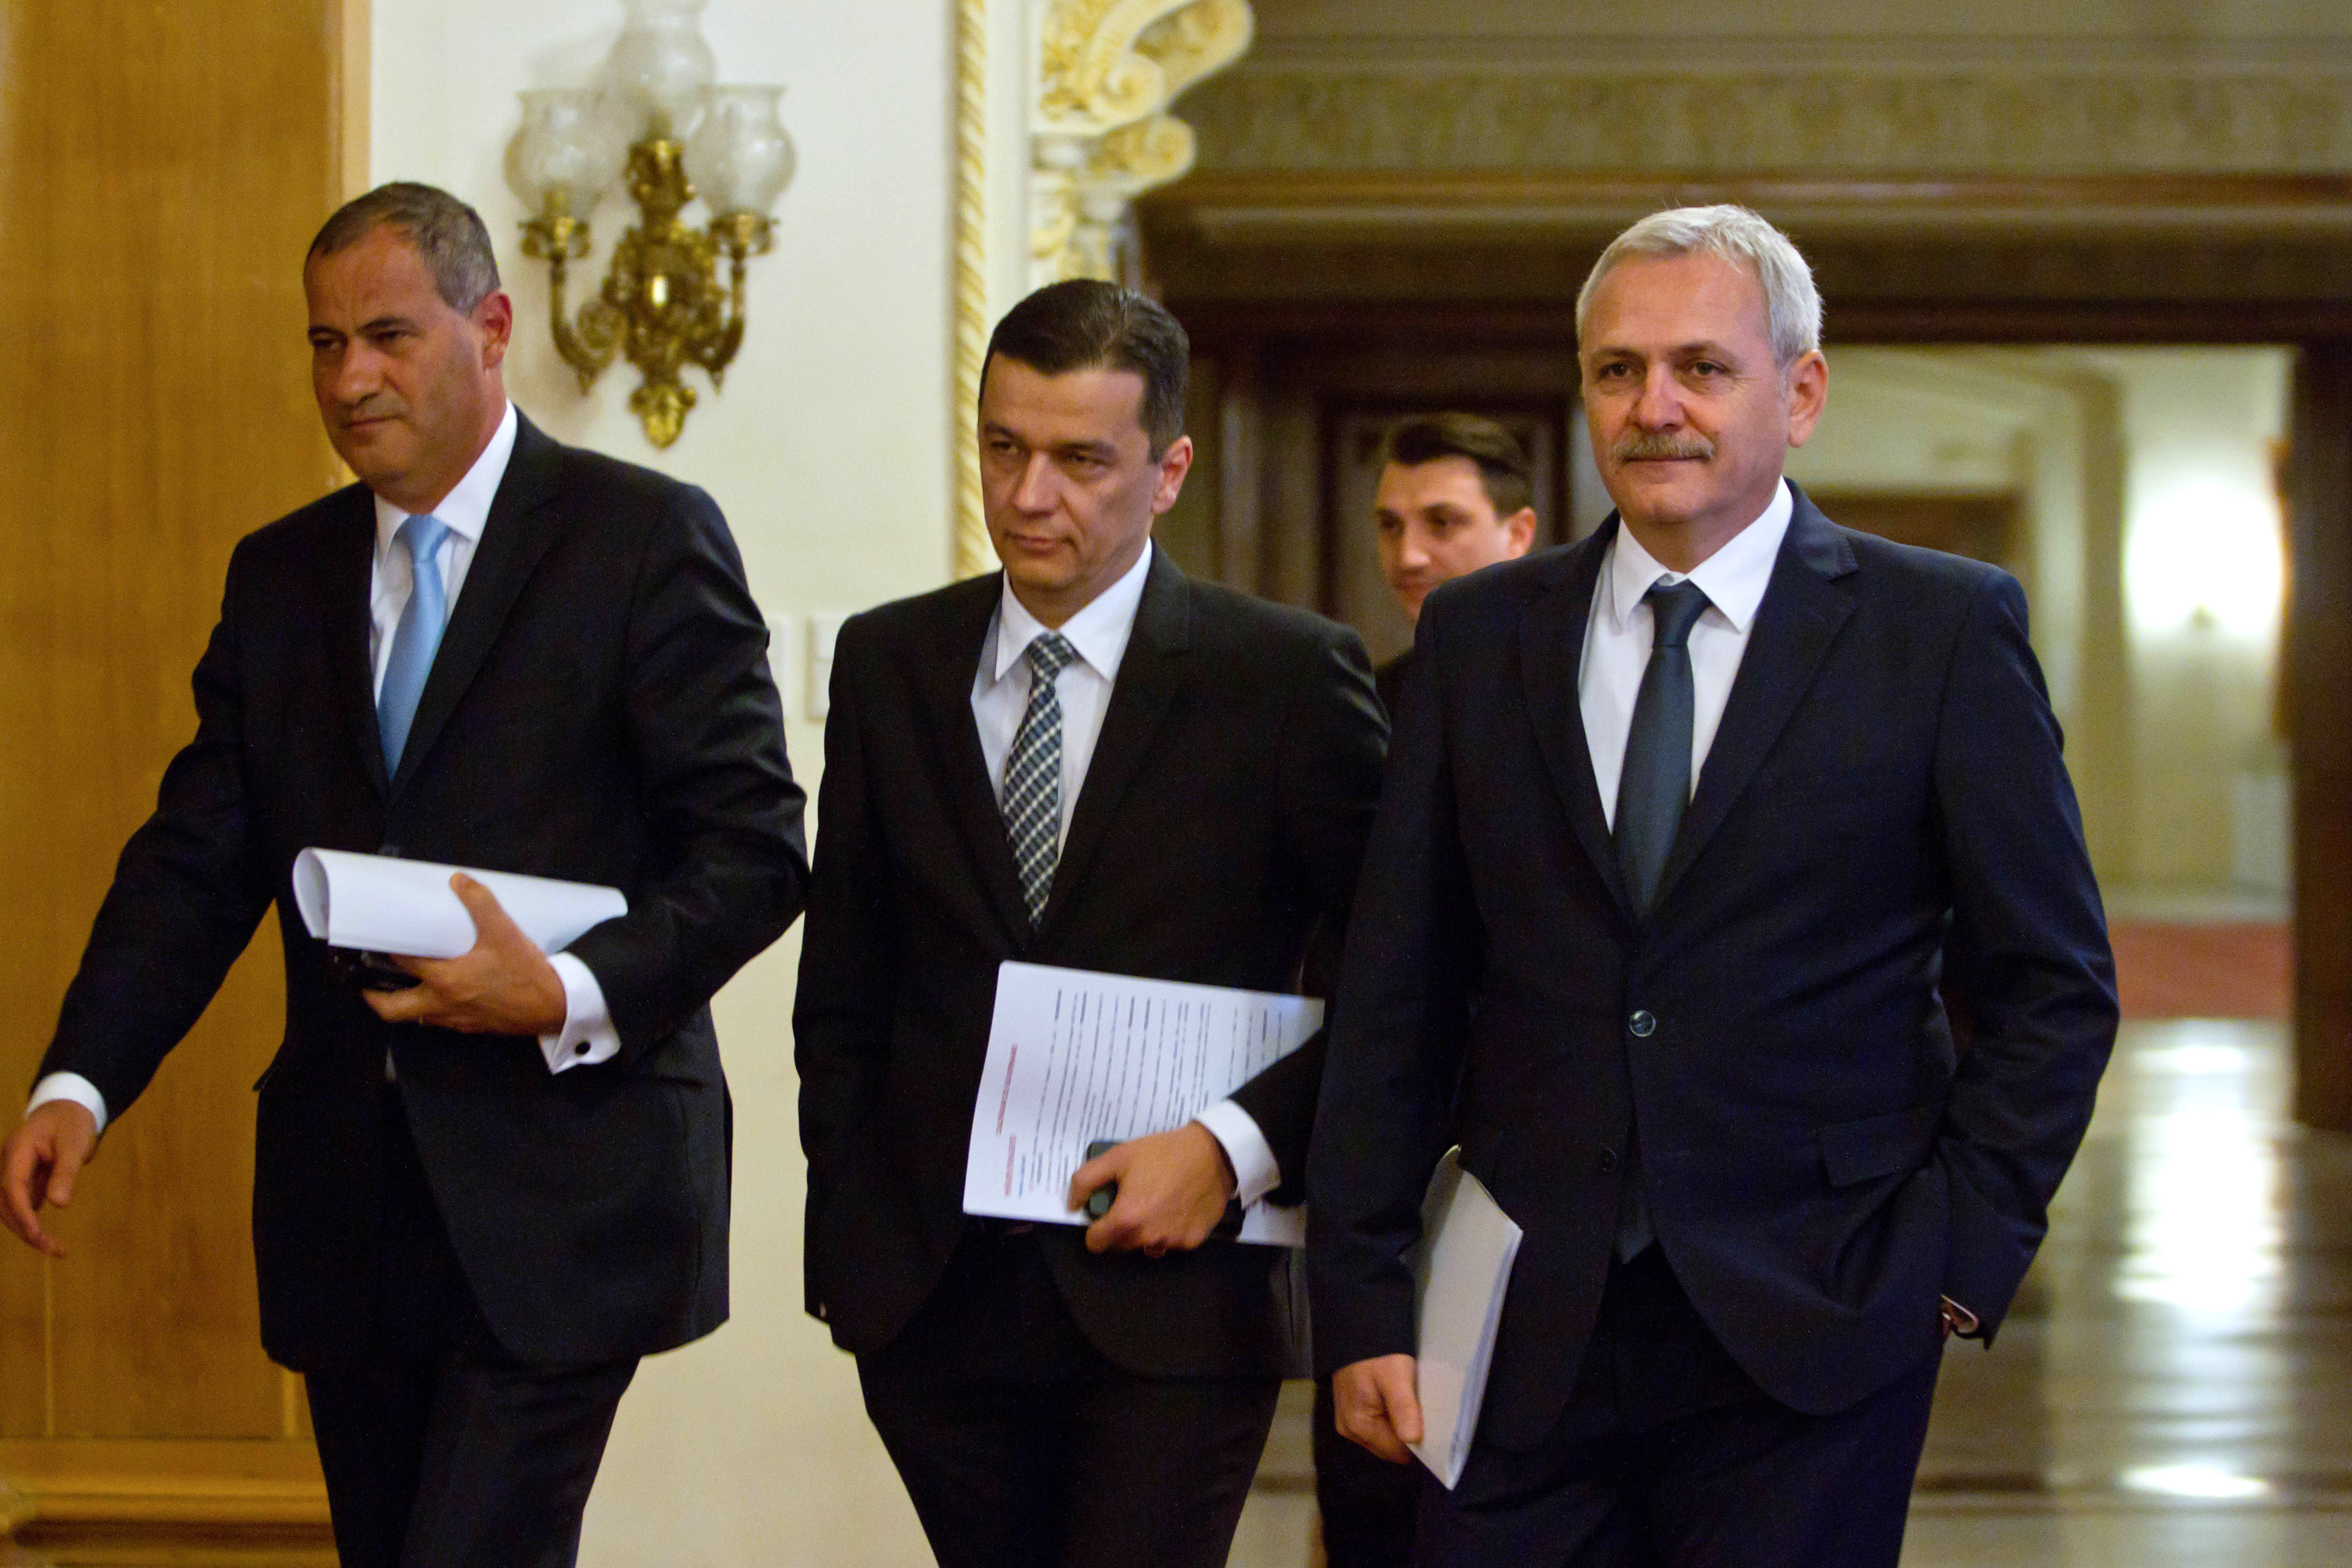 Numire surpriză a premierului Sorin Grindeanu: Mălin-Matei Muşetescu, guvernator al Administraţiei Rezervaţiei Biosferei "Delta Dunării"